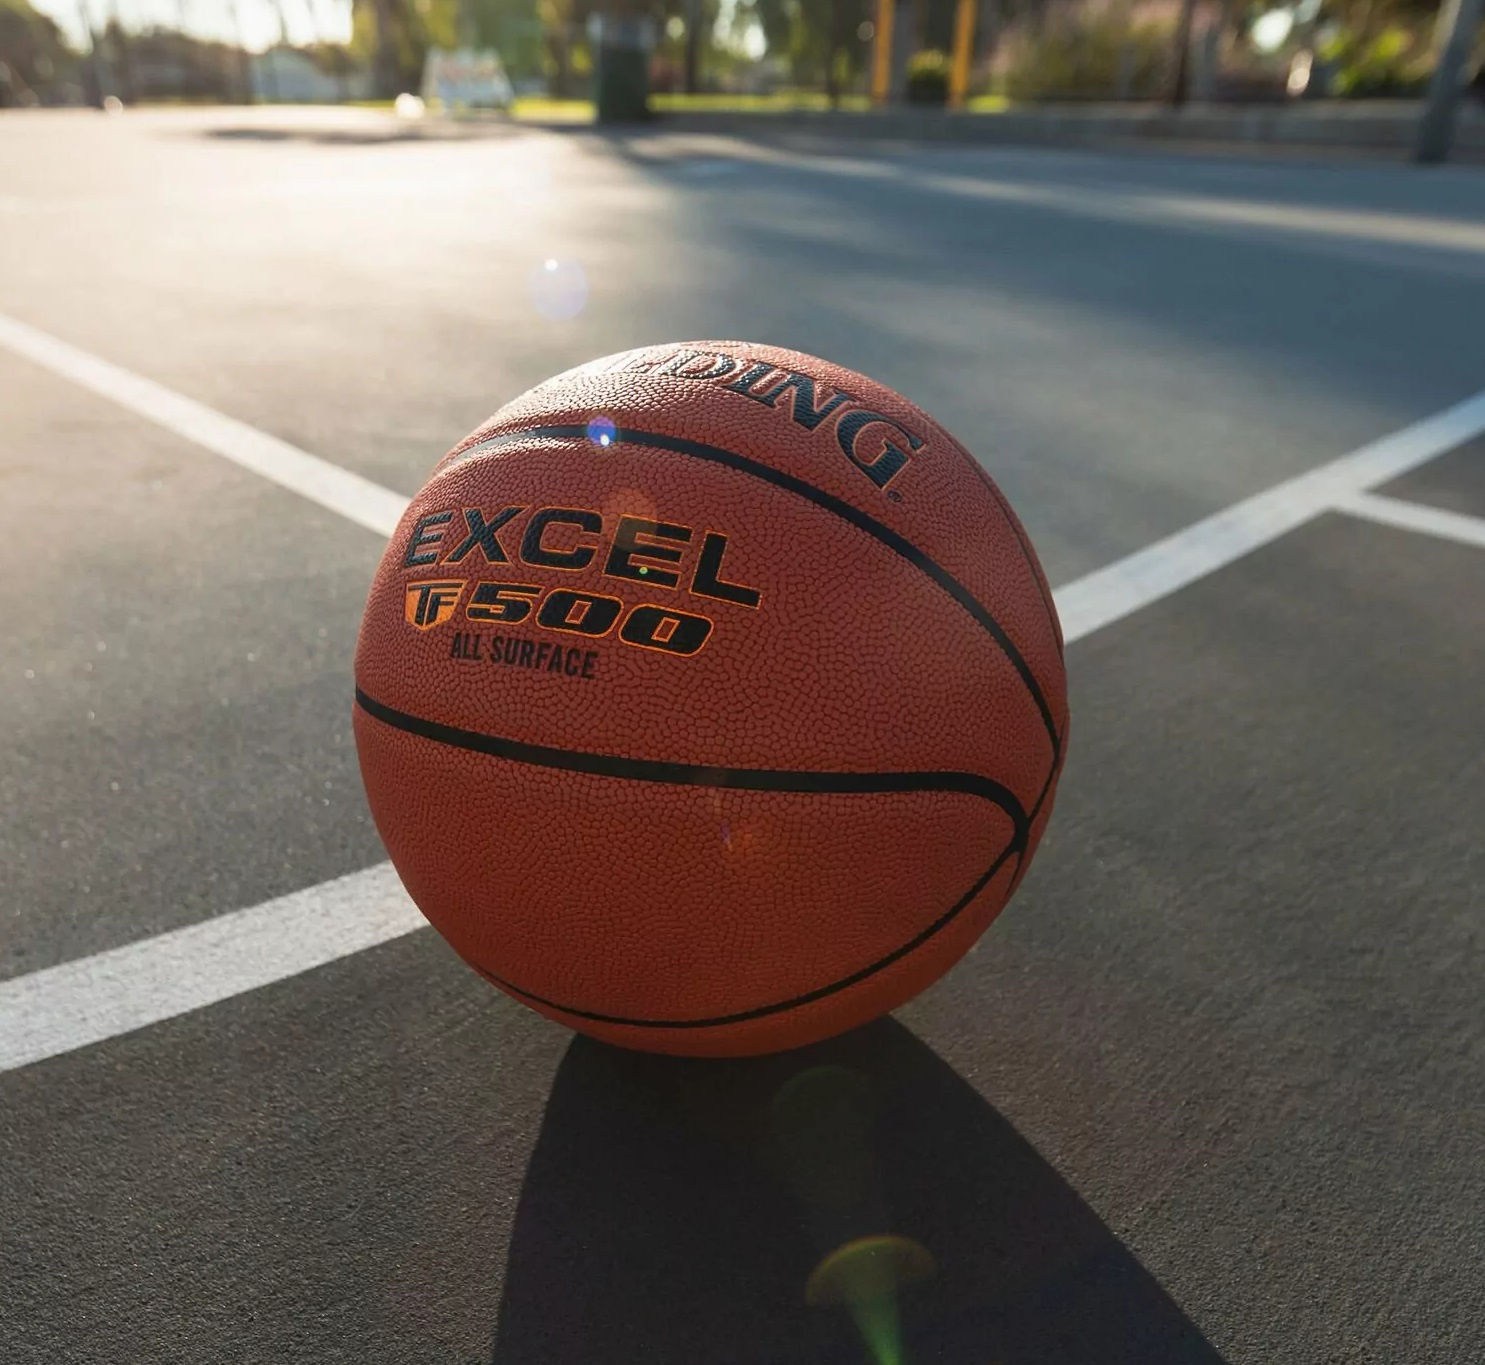 Баскетбольный мяч Spalding Excel TF500 размер 7